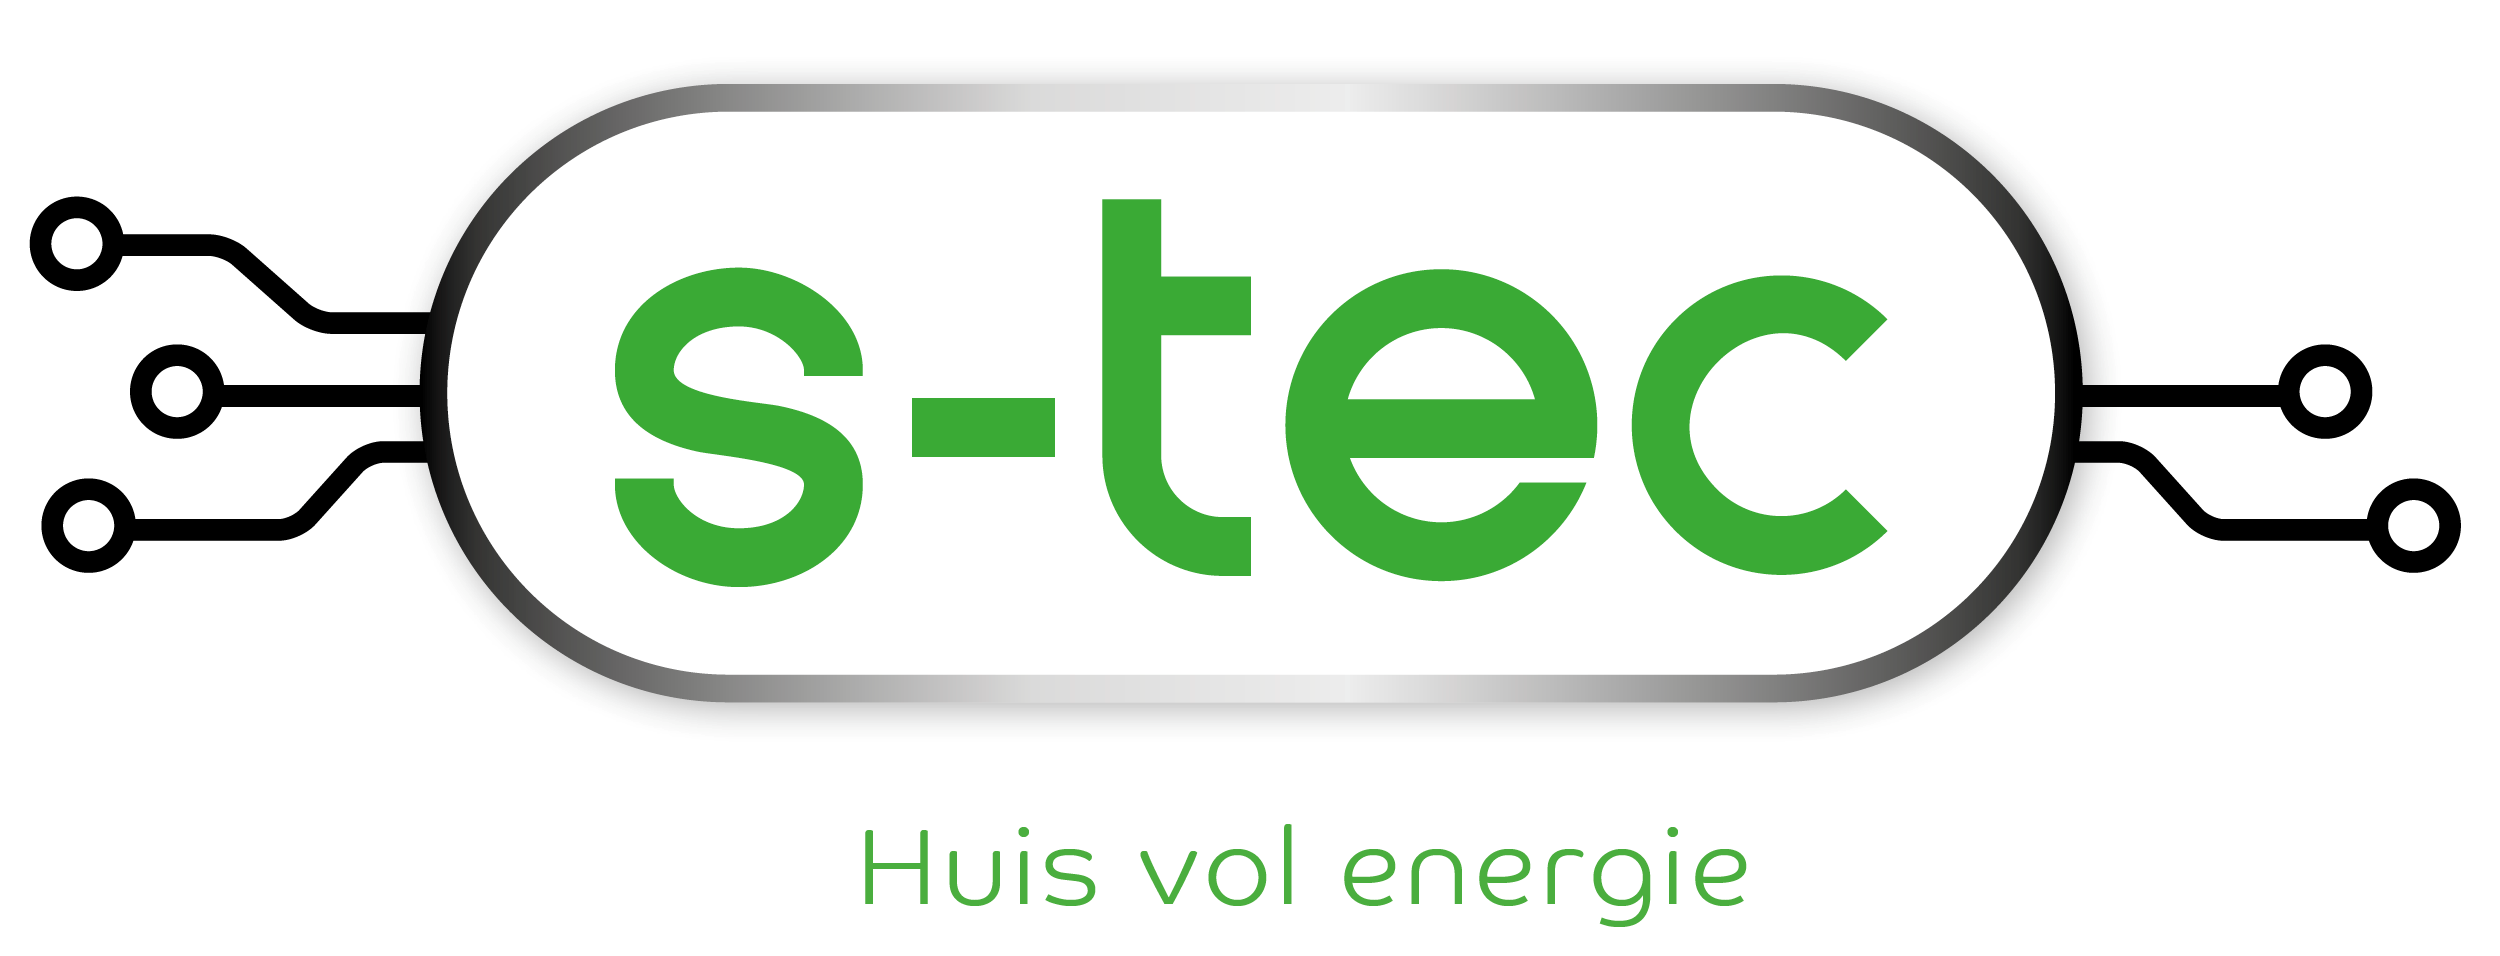 STEC logo